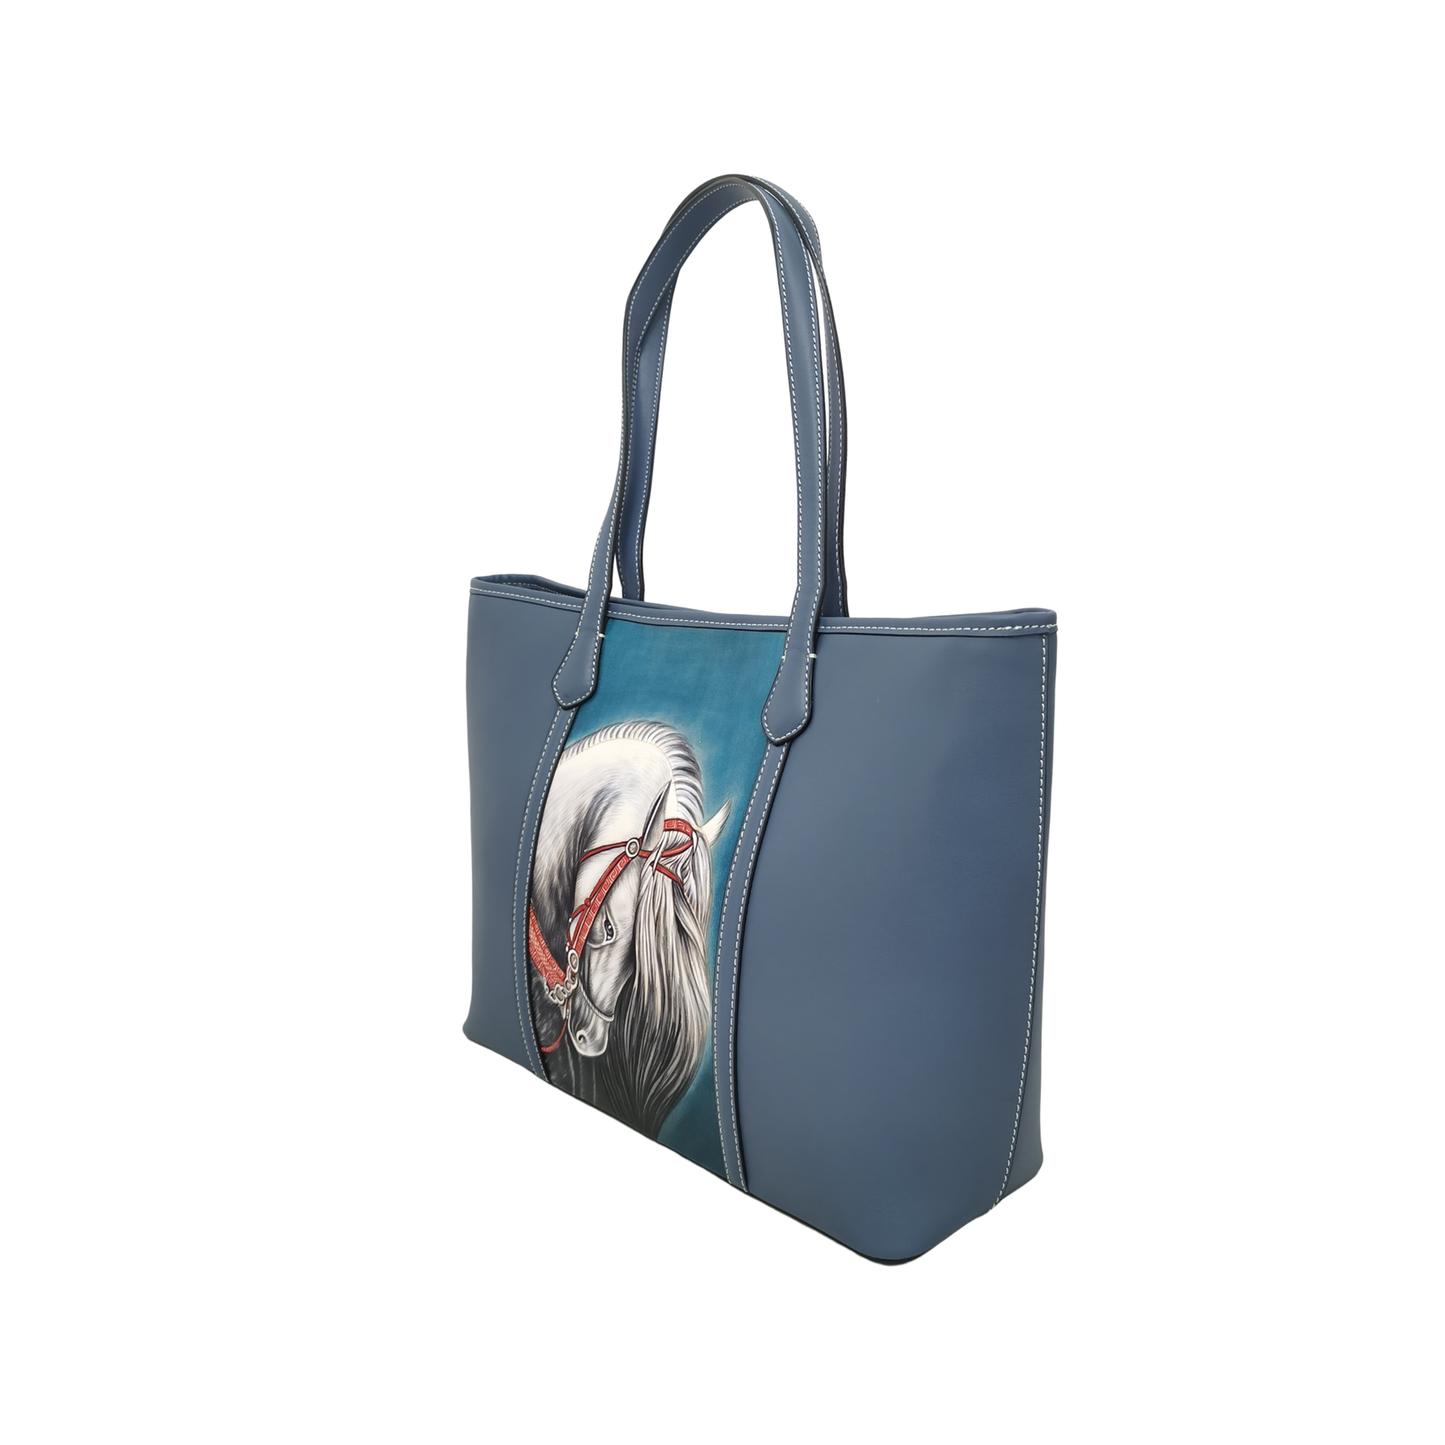 Women's genuine cowhide leather engraved tote bag Depaule design handbag